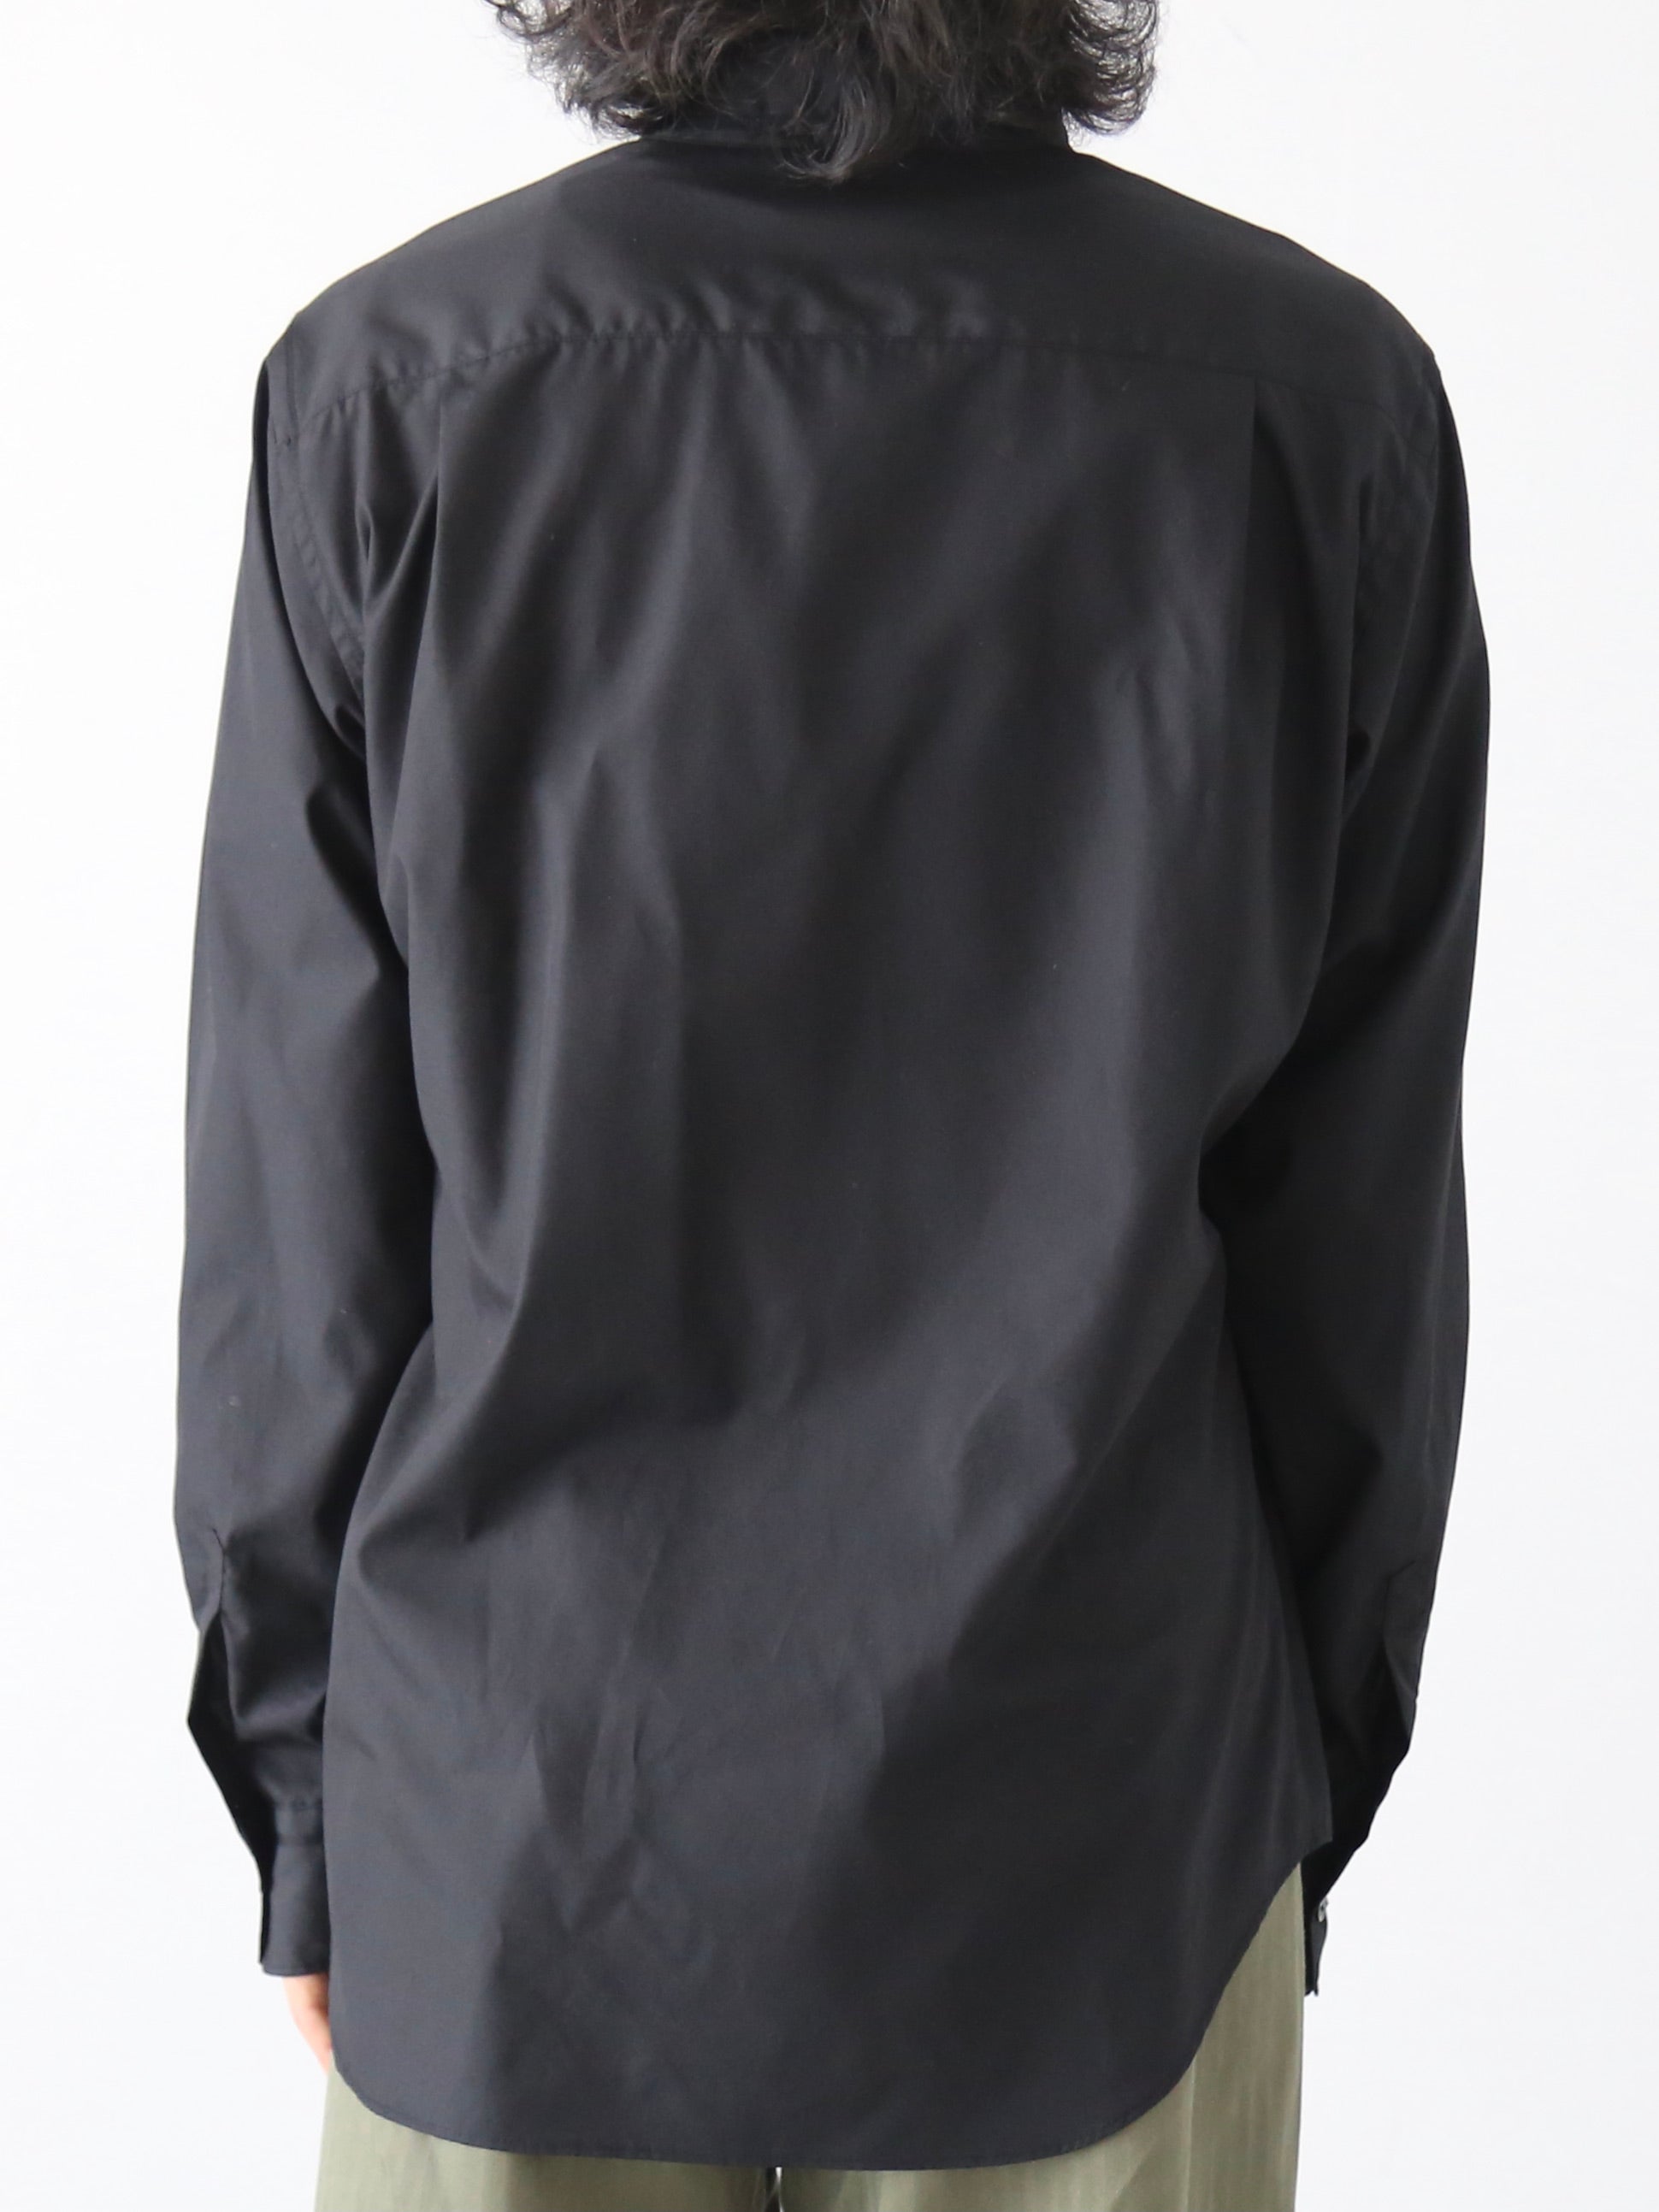 KIMURA 5ニードルスプレーンフロントパッカリングシャツ